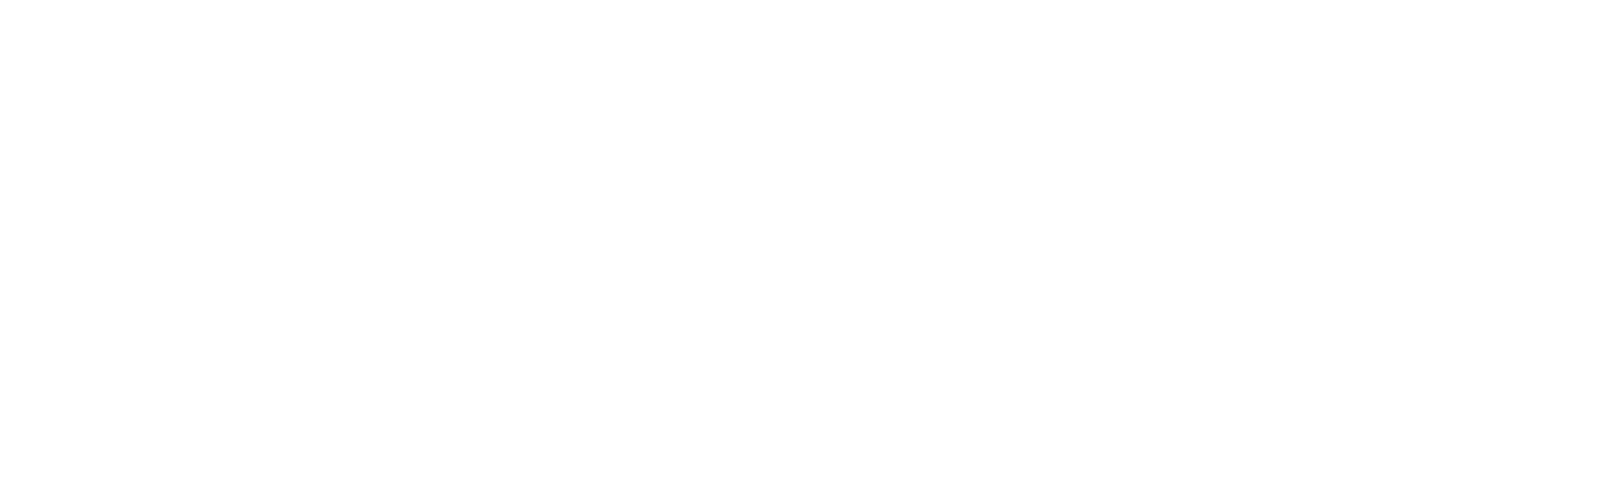 Paytm logo large for dark backgrounds (transparent PNG)